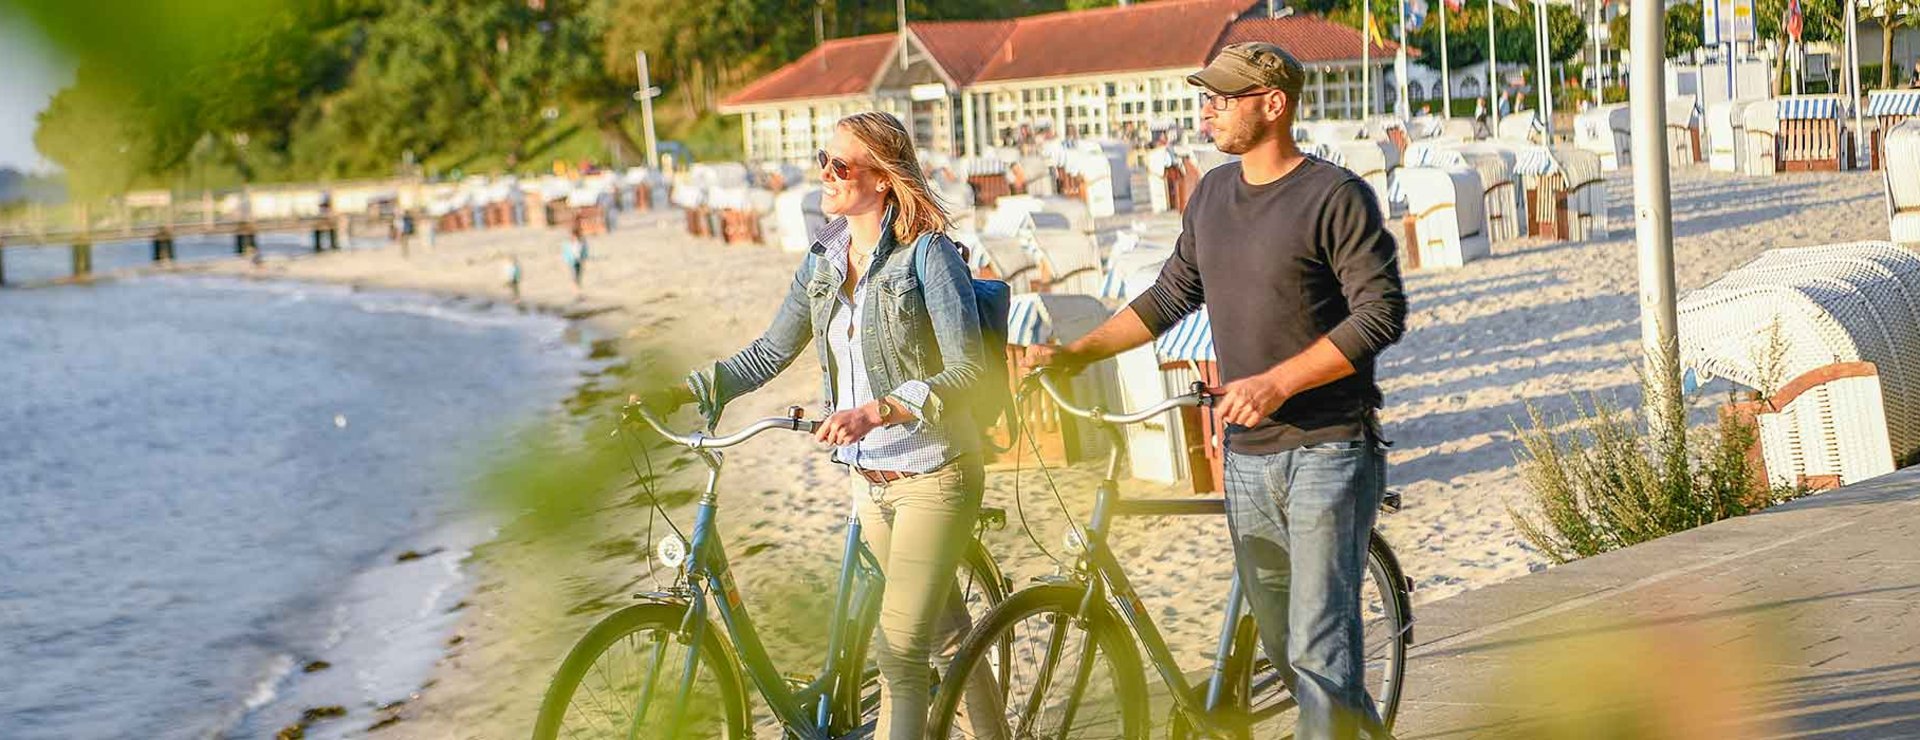 Paar mit Fahrrad am Strand Sandwig in Glücksburg ©flensburger-foerde.de/Oliver Franke